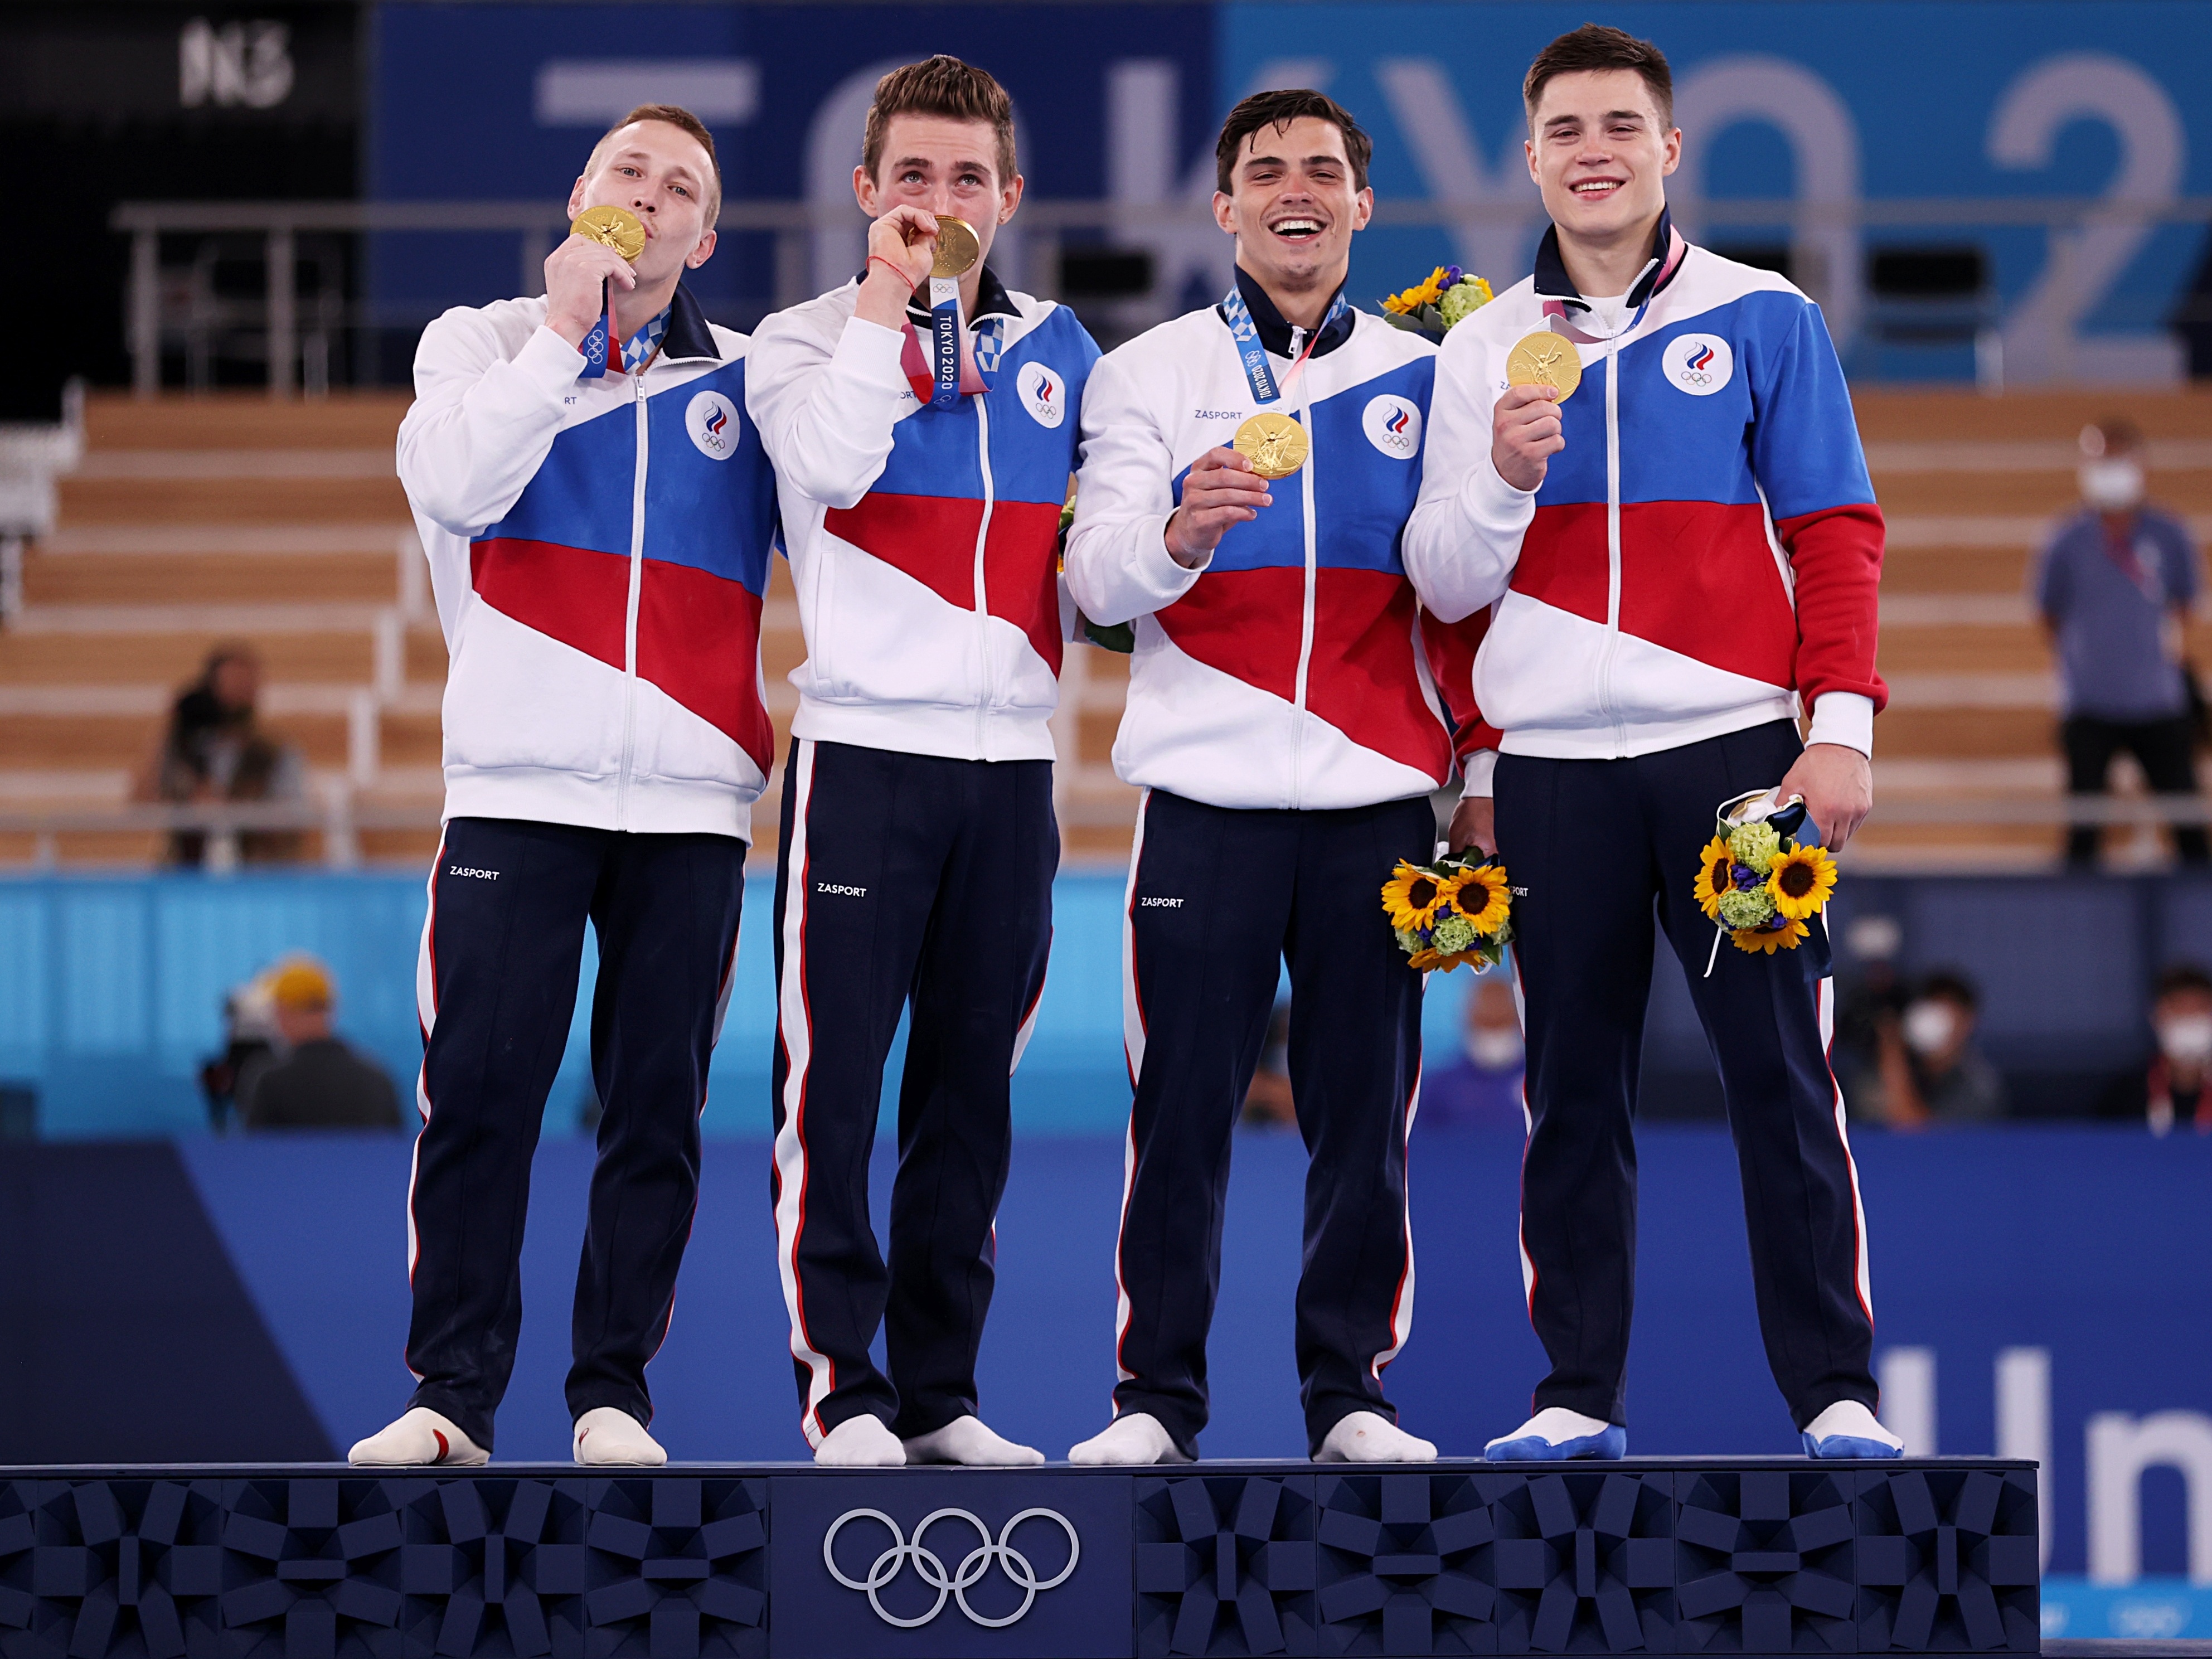 Por que a Rússia foi banida das olimpíadas? - Quora